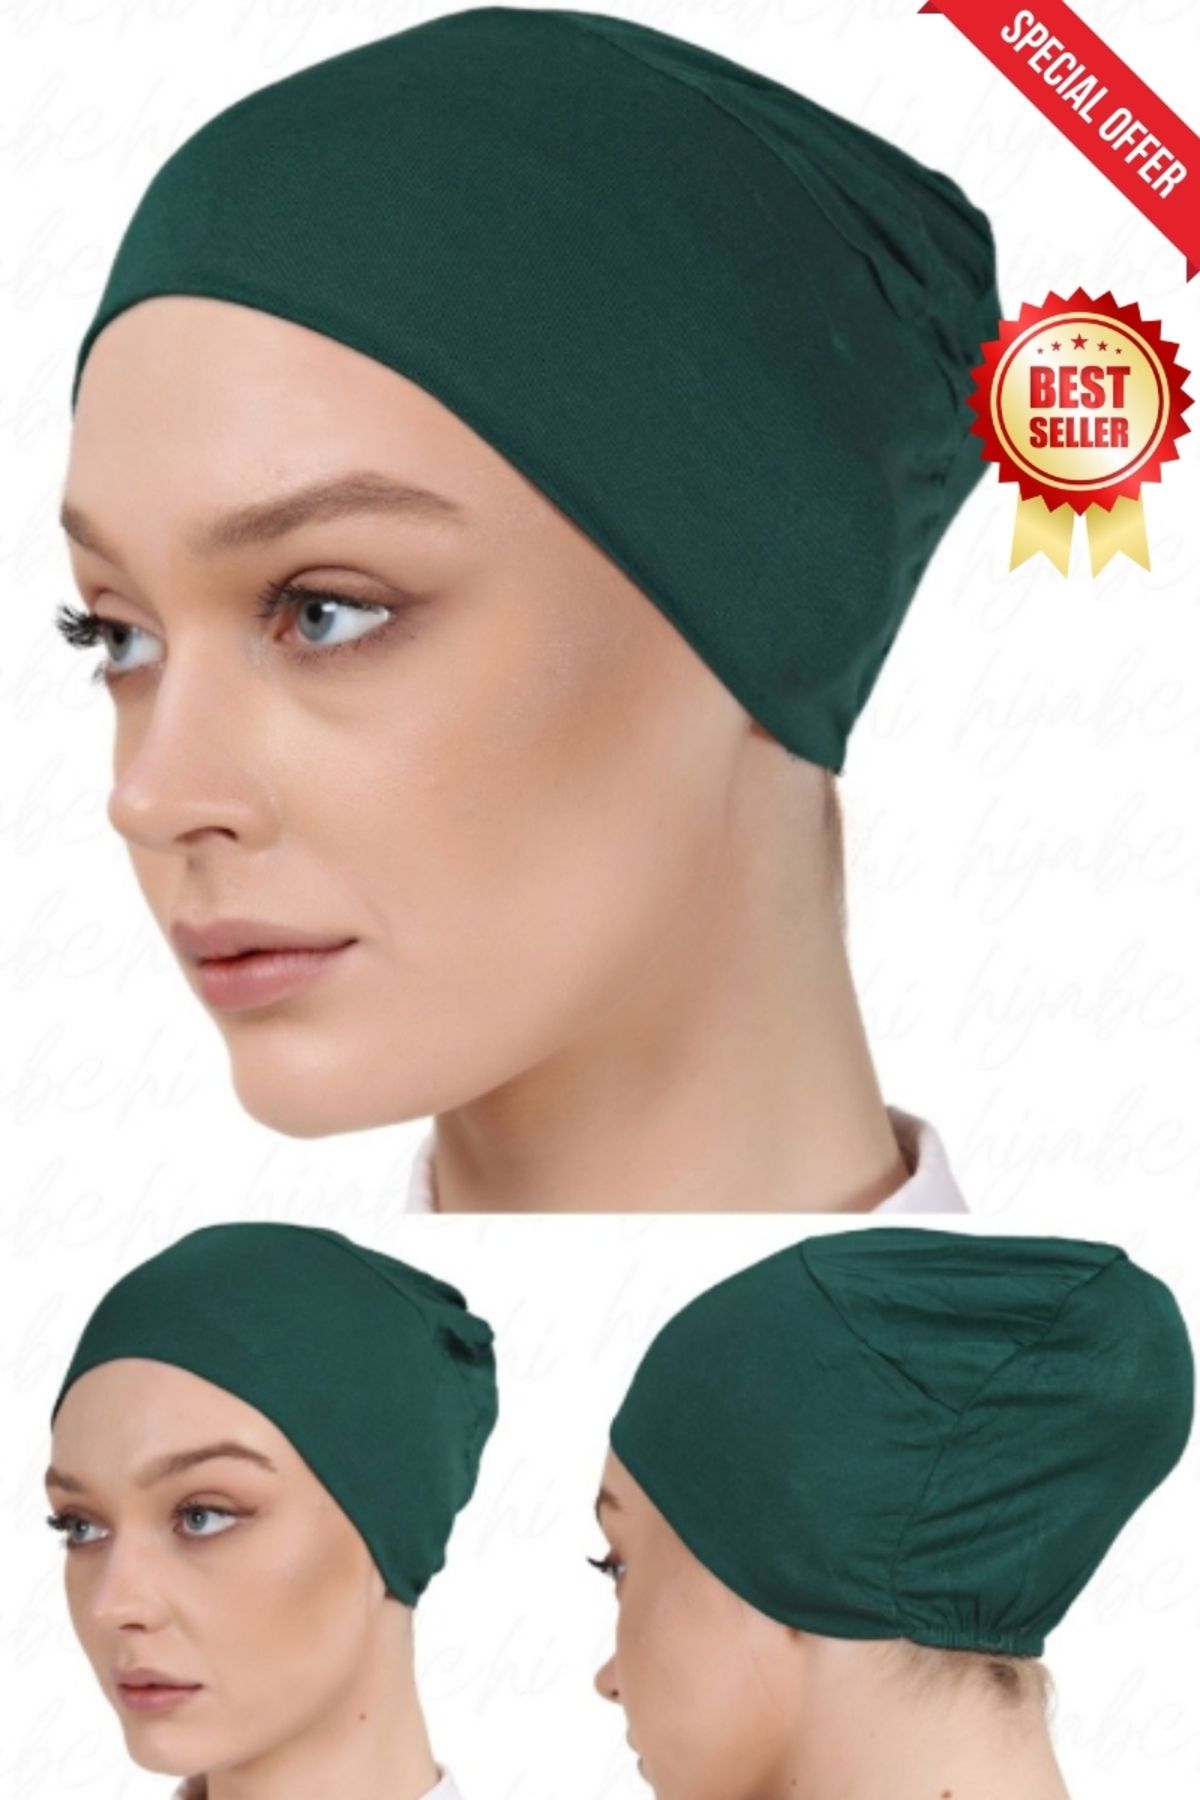 hijabchi Pratik Gecmeli Viskon Tesettür Bonesi- Pratıc Vıscon Cap Under Bonnet For Hıjab - Zümrüt